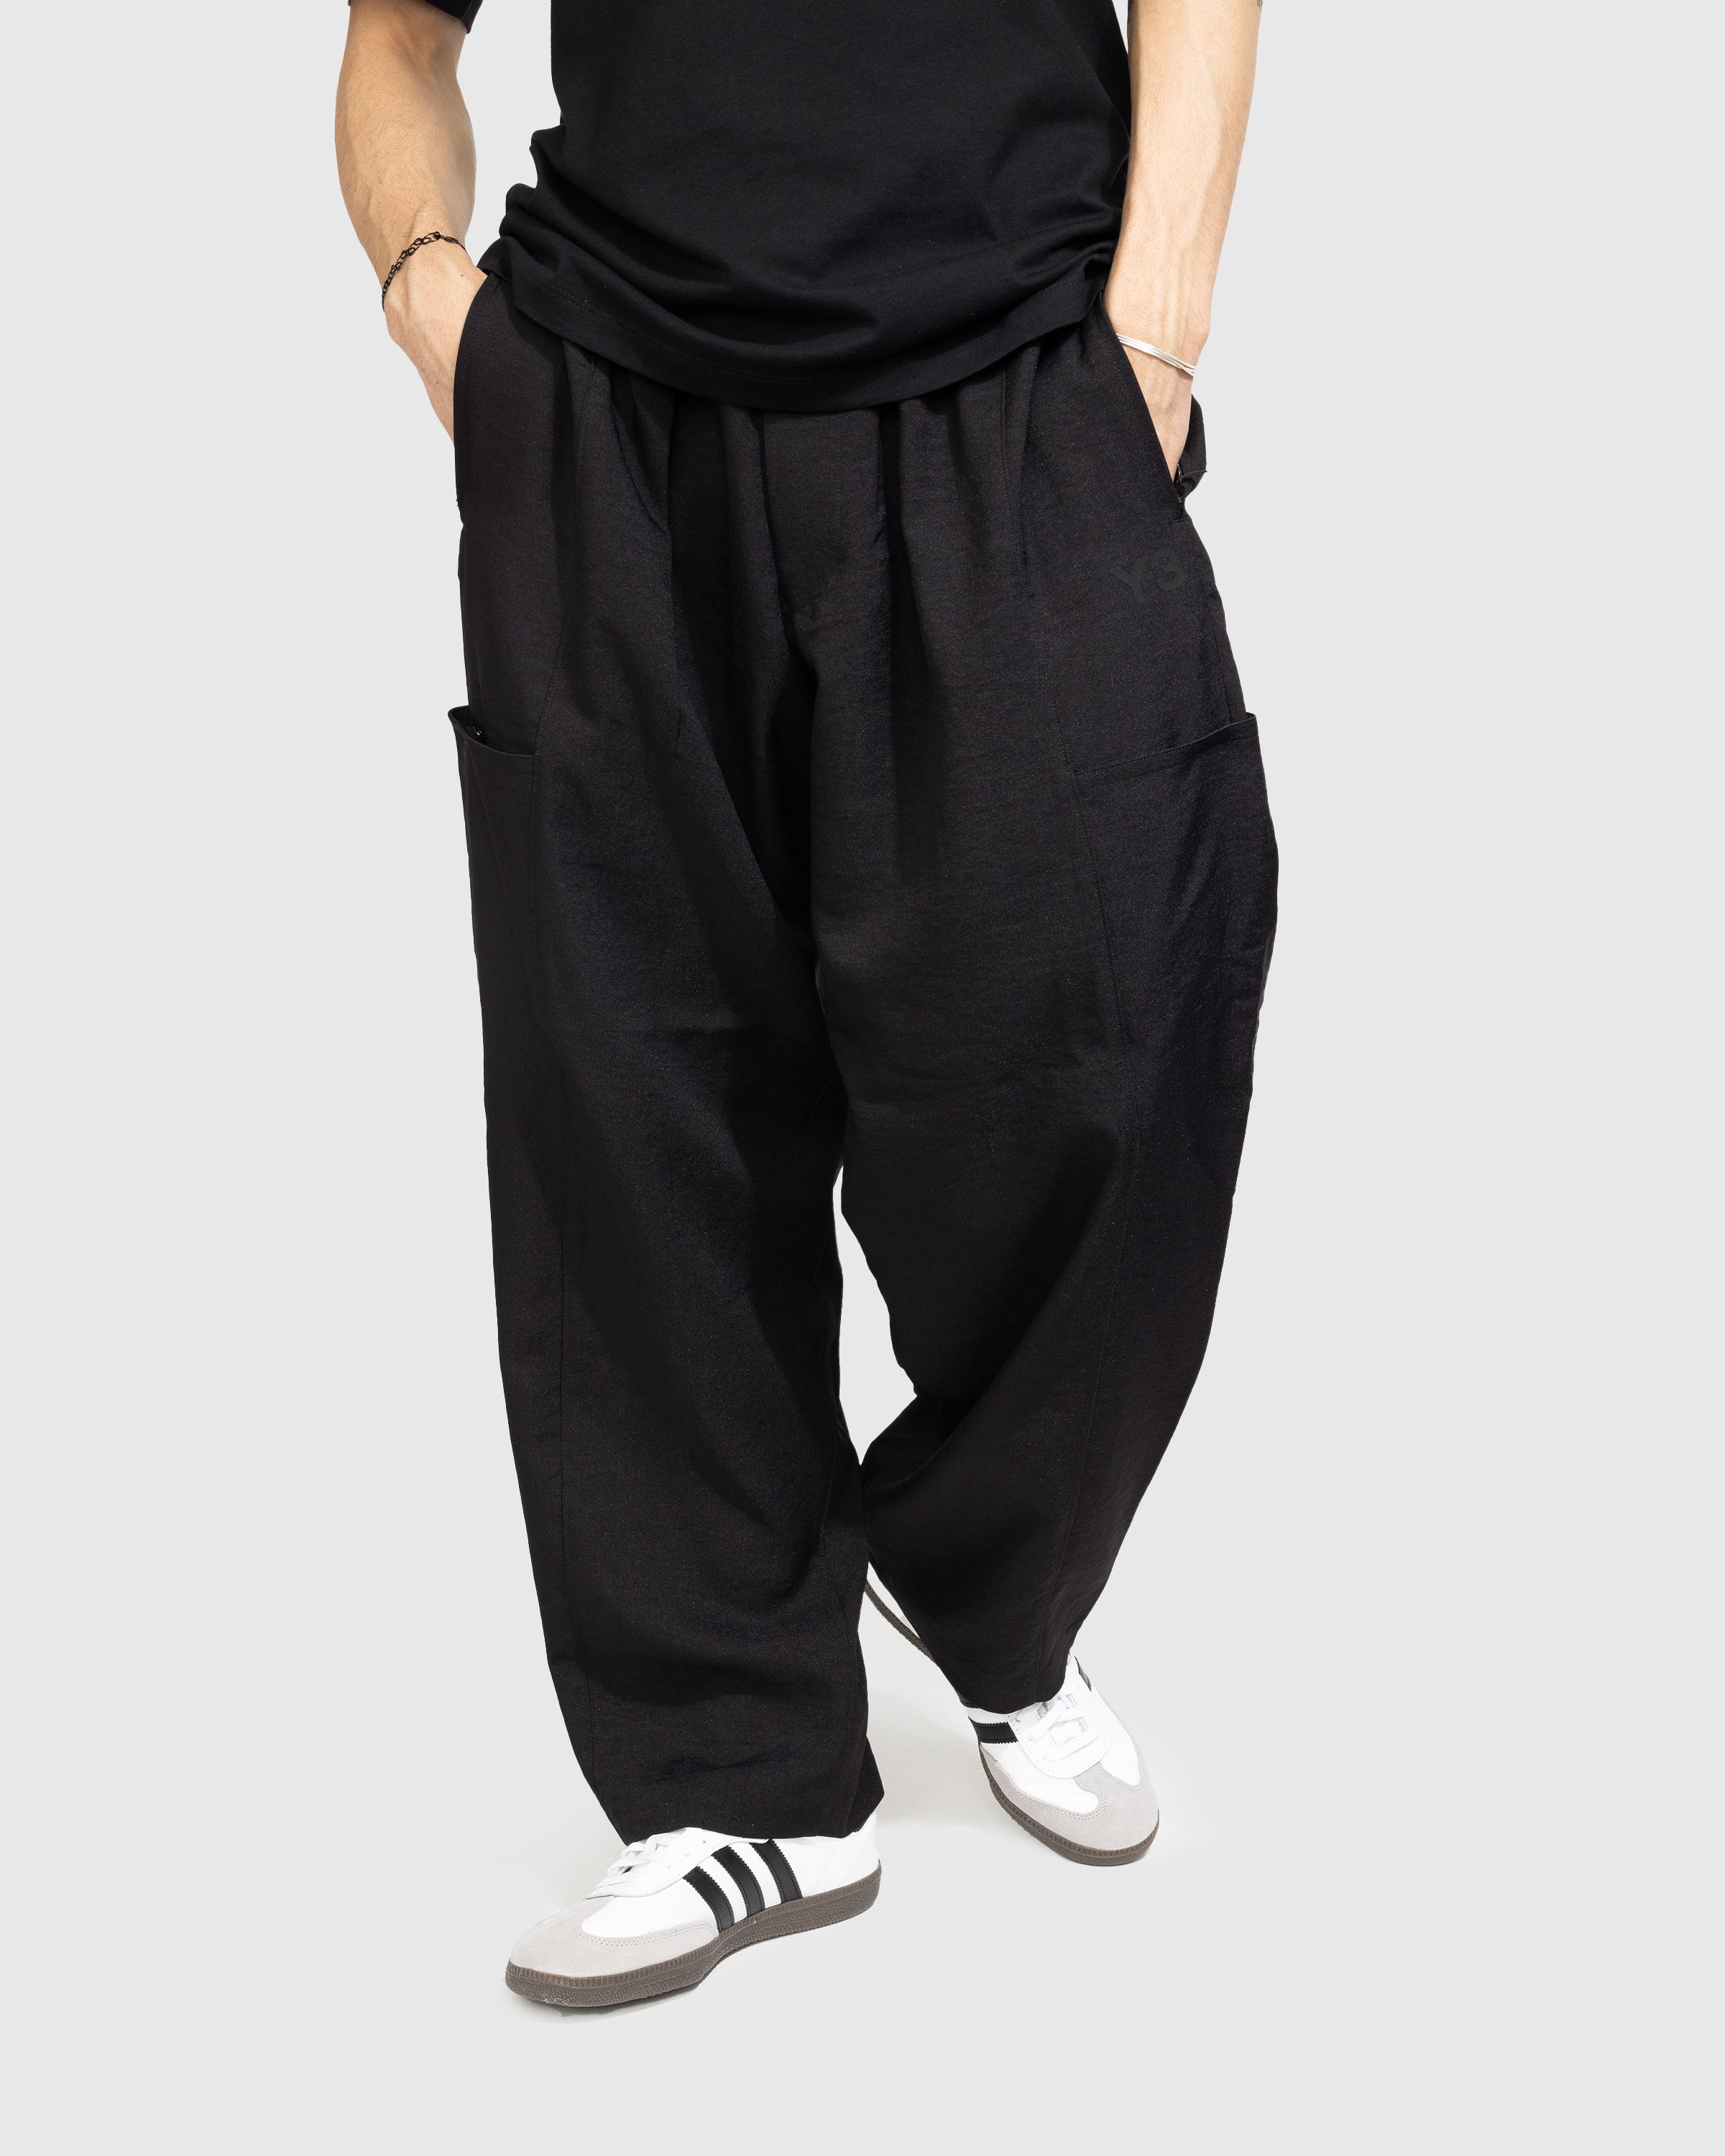 Y-3 - CL S UNI Pants - Clothing - Black - Image 2